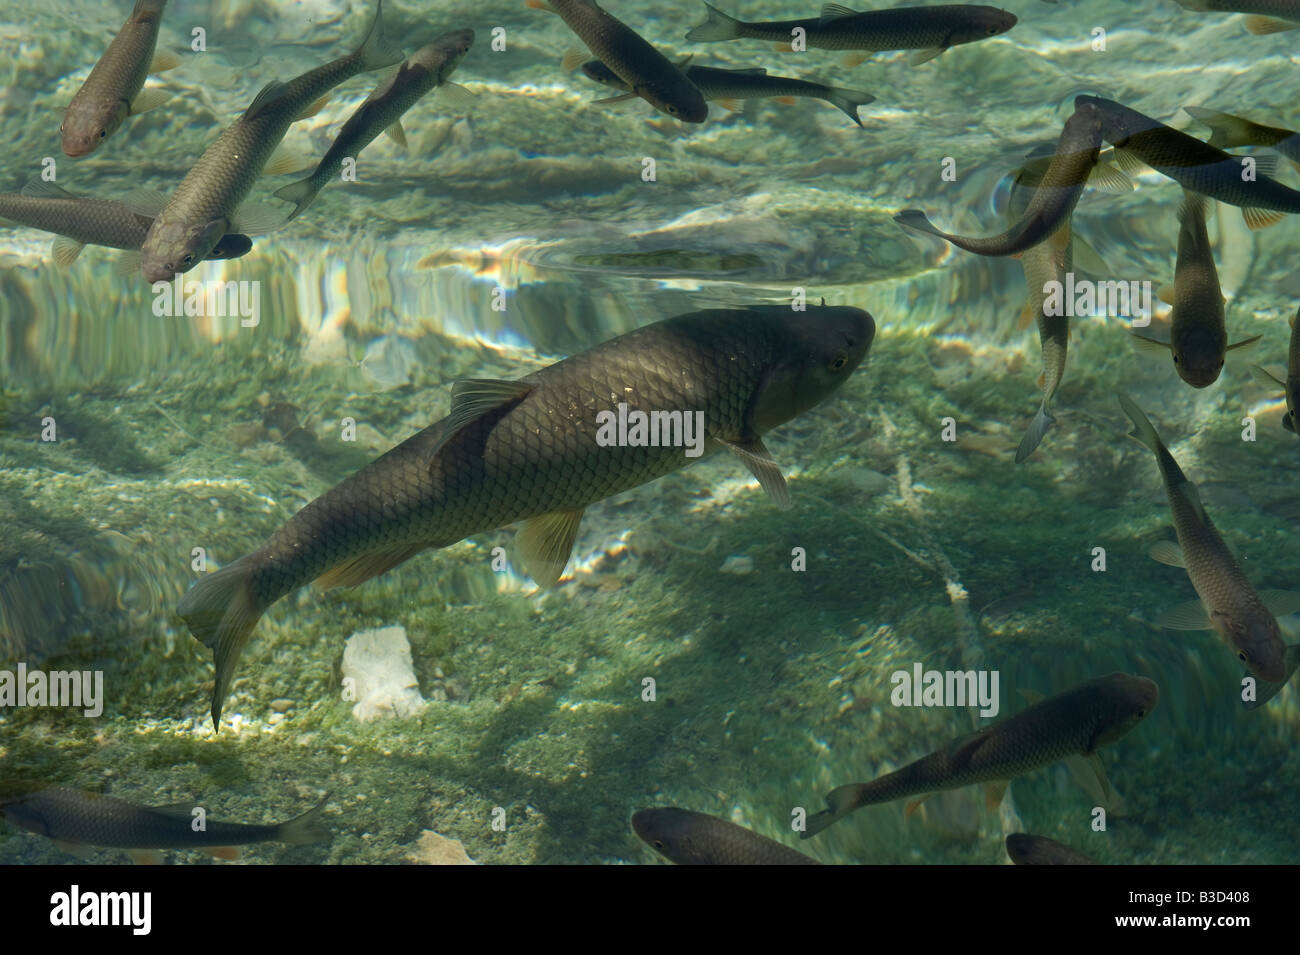 Pesce in incredibilmente chiaro fine pulita acque nel Parco Nazionale dei Laghi di Plitvice in Croazia contea di Lika Senj 10km ad est di Bihac Croa Foto Stock